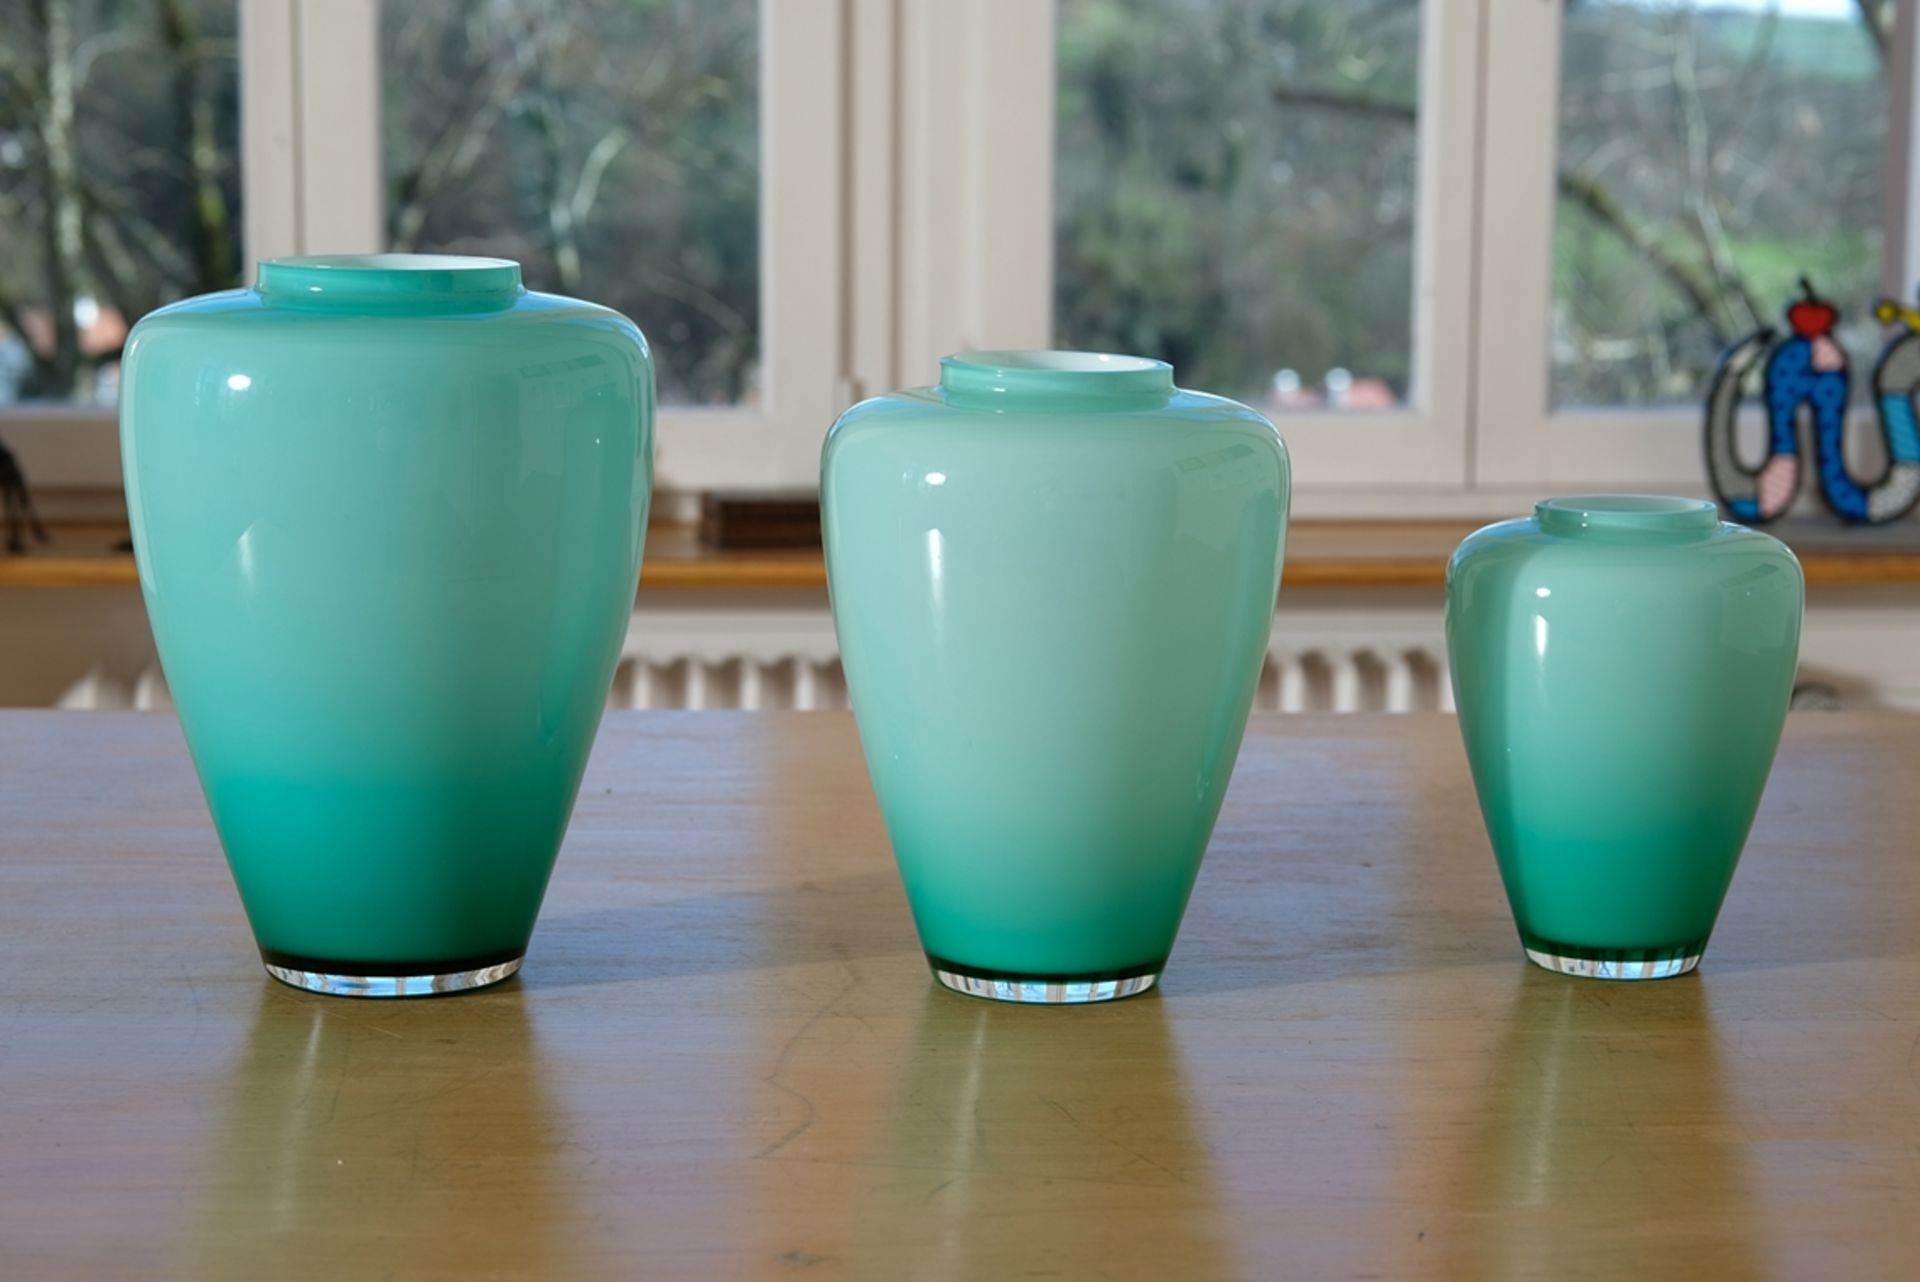 Venini vases from Murano, three pieces, Italy, 1980-1989.